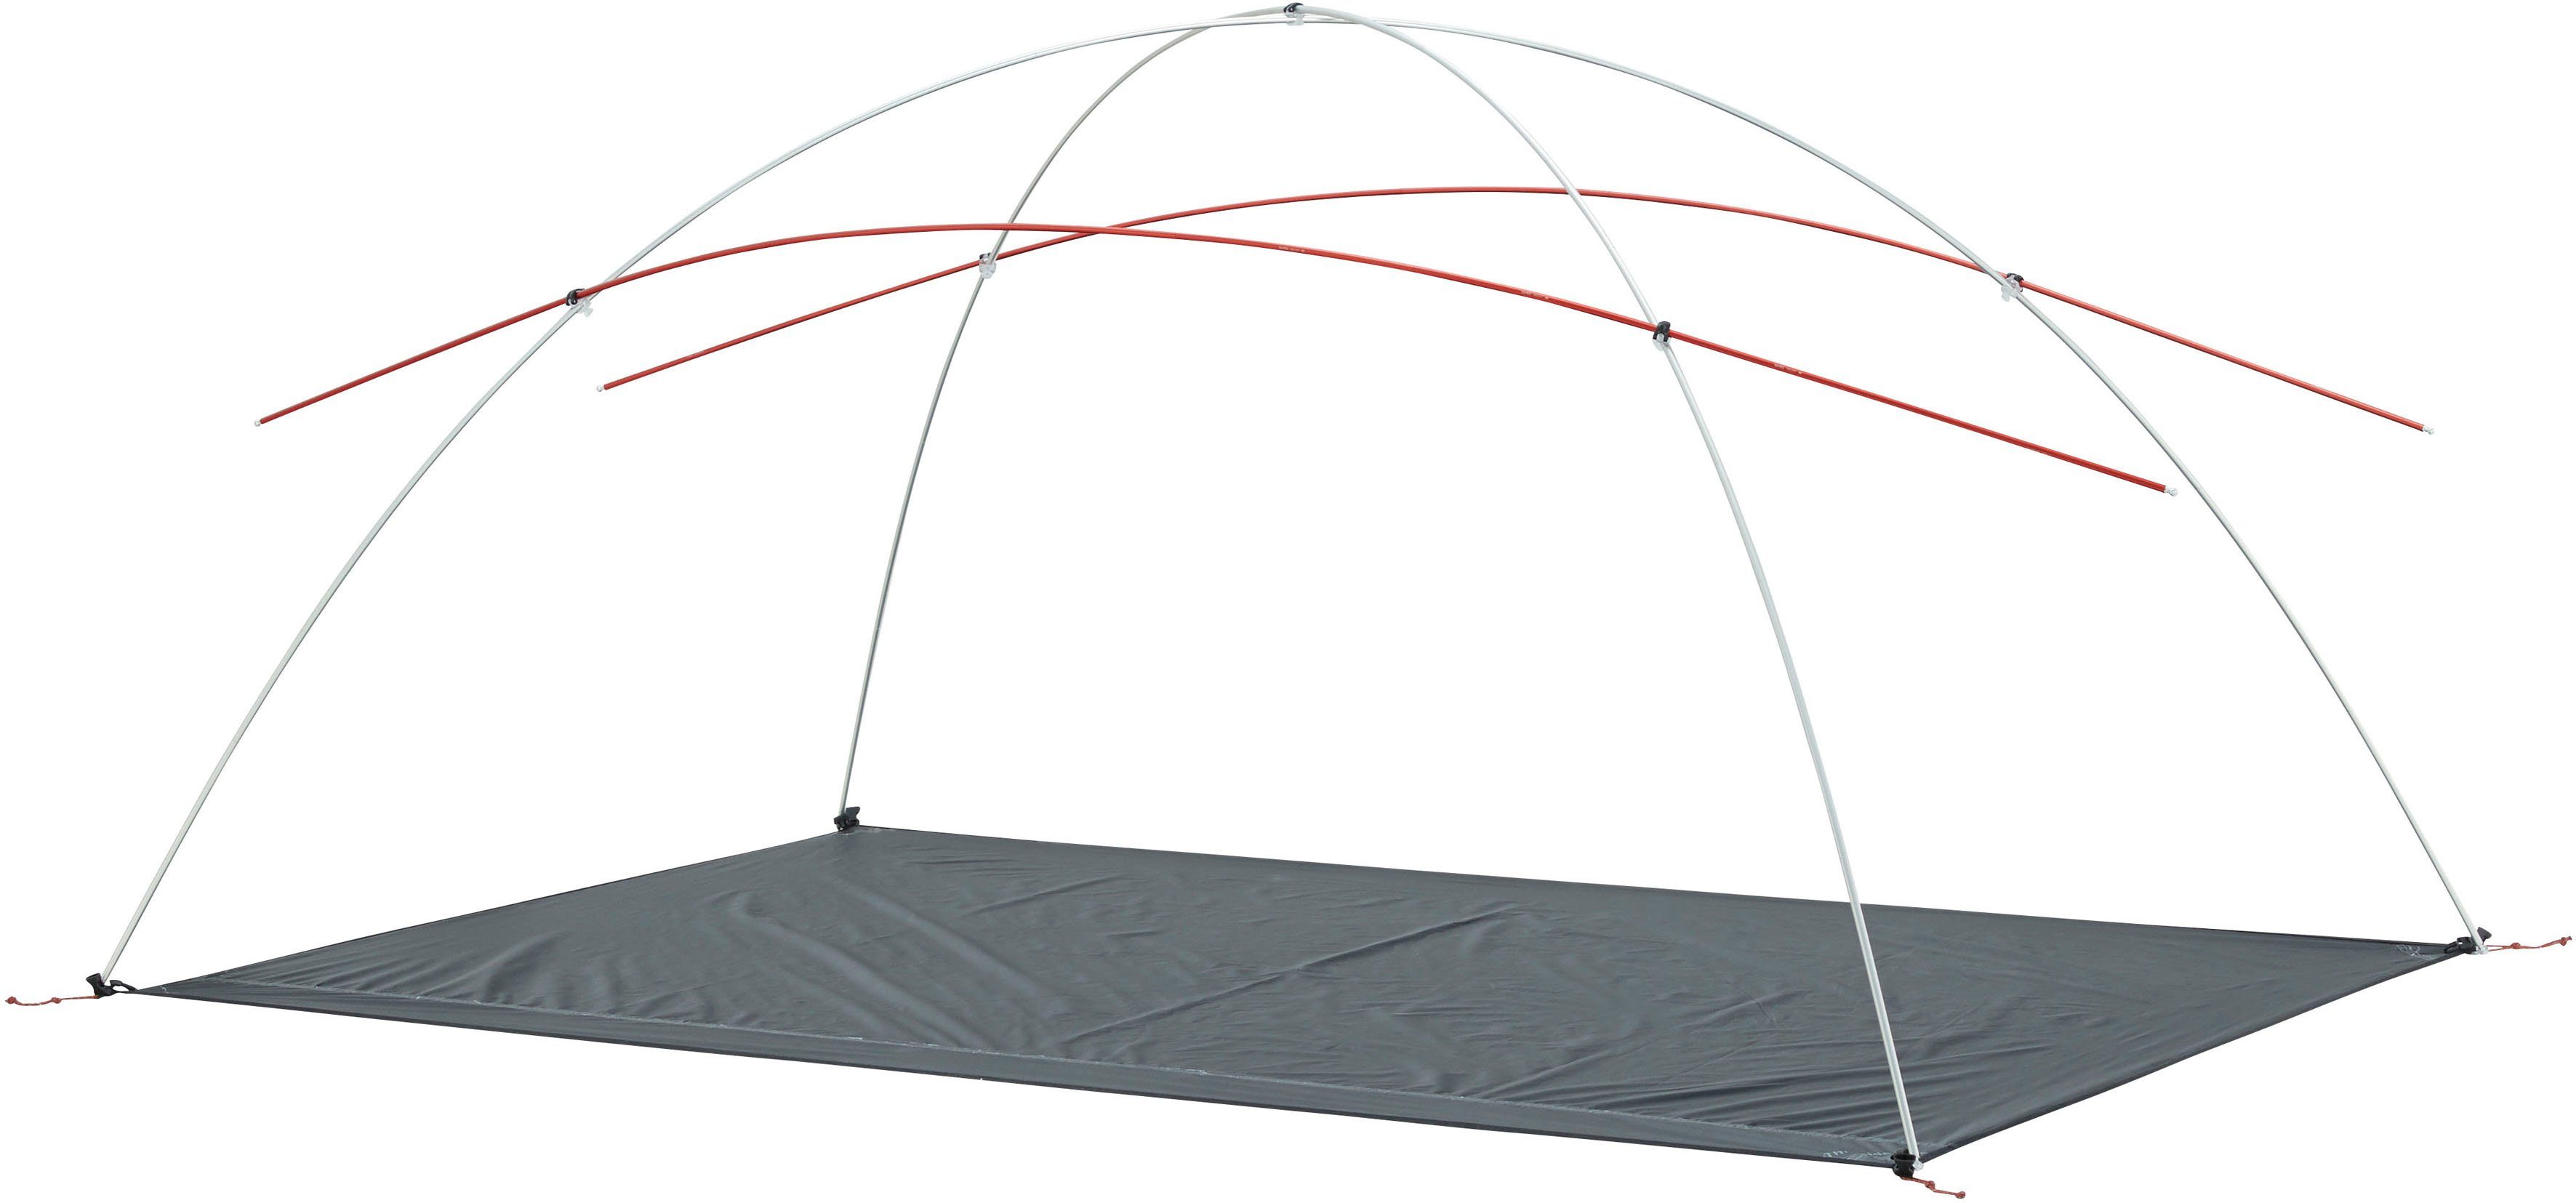 Tent Dark 2 2 Otra Personen: 1 (Packung, Olive, Nordisk tlg) PU Geodätzelt